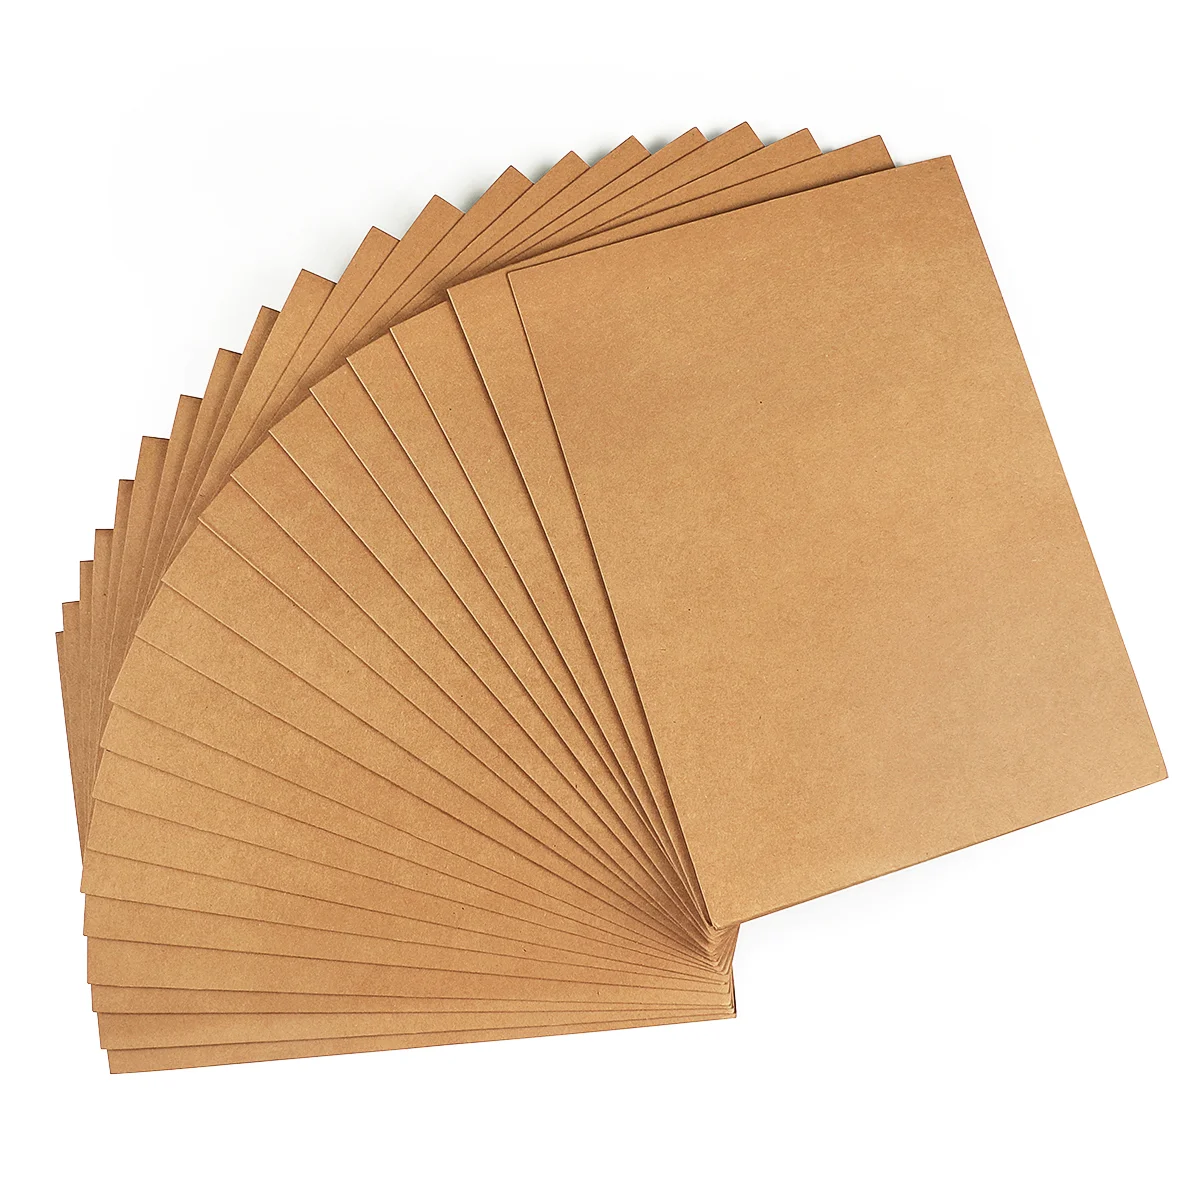 

Папка А4 для документов из крафт-бумаги, коричневая папка для документов из крафт-бумаги для презентаций, поделок и офиса, 20 шт.